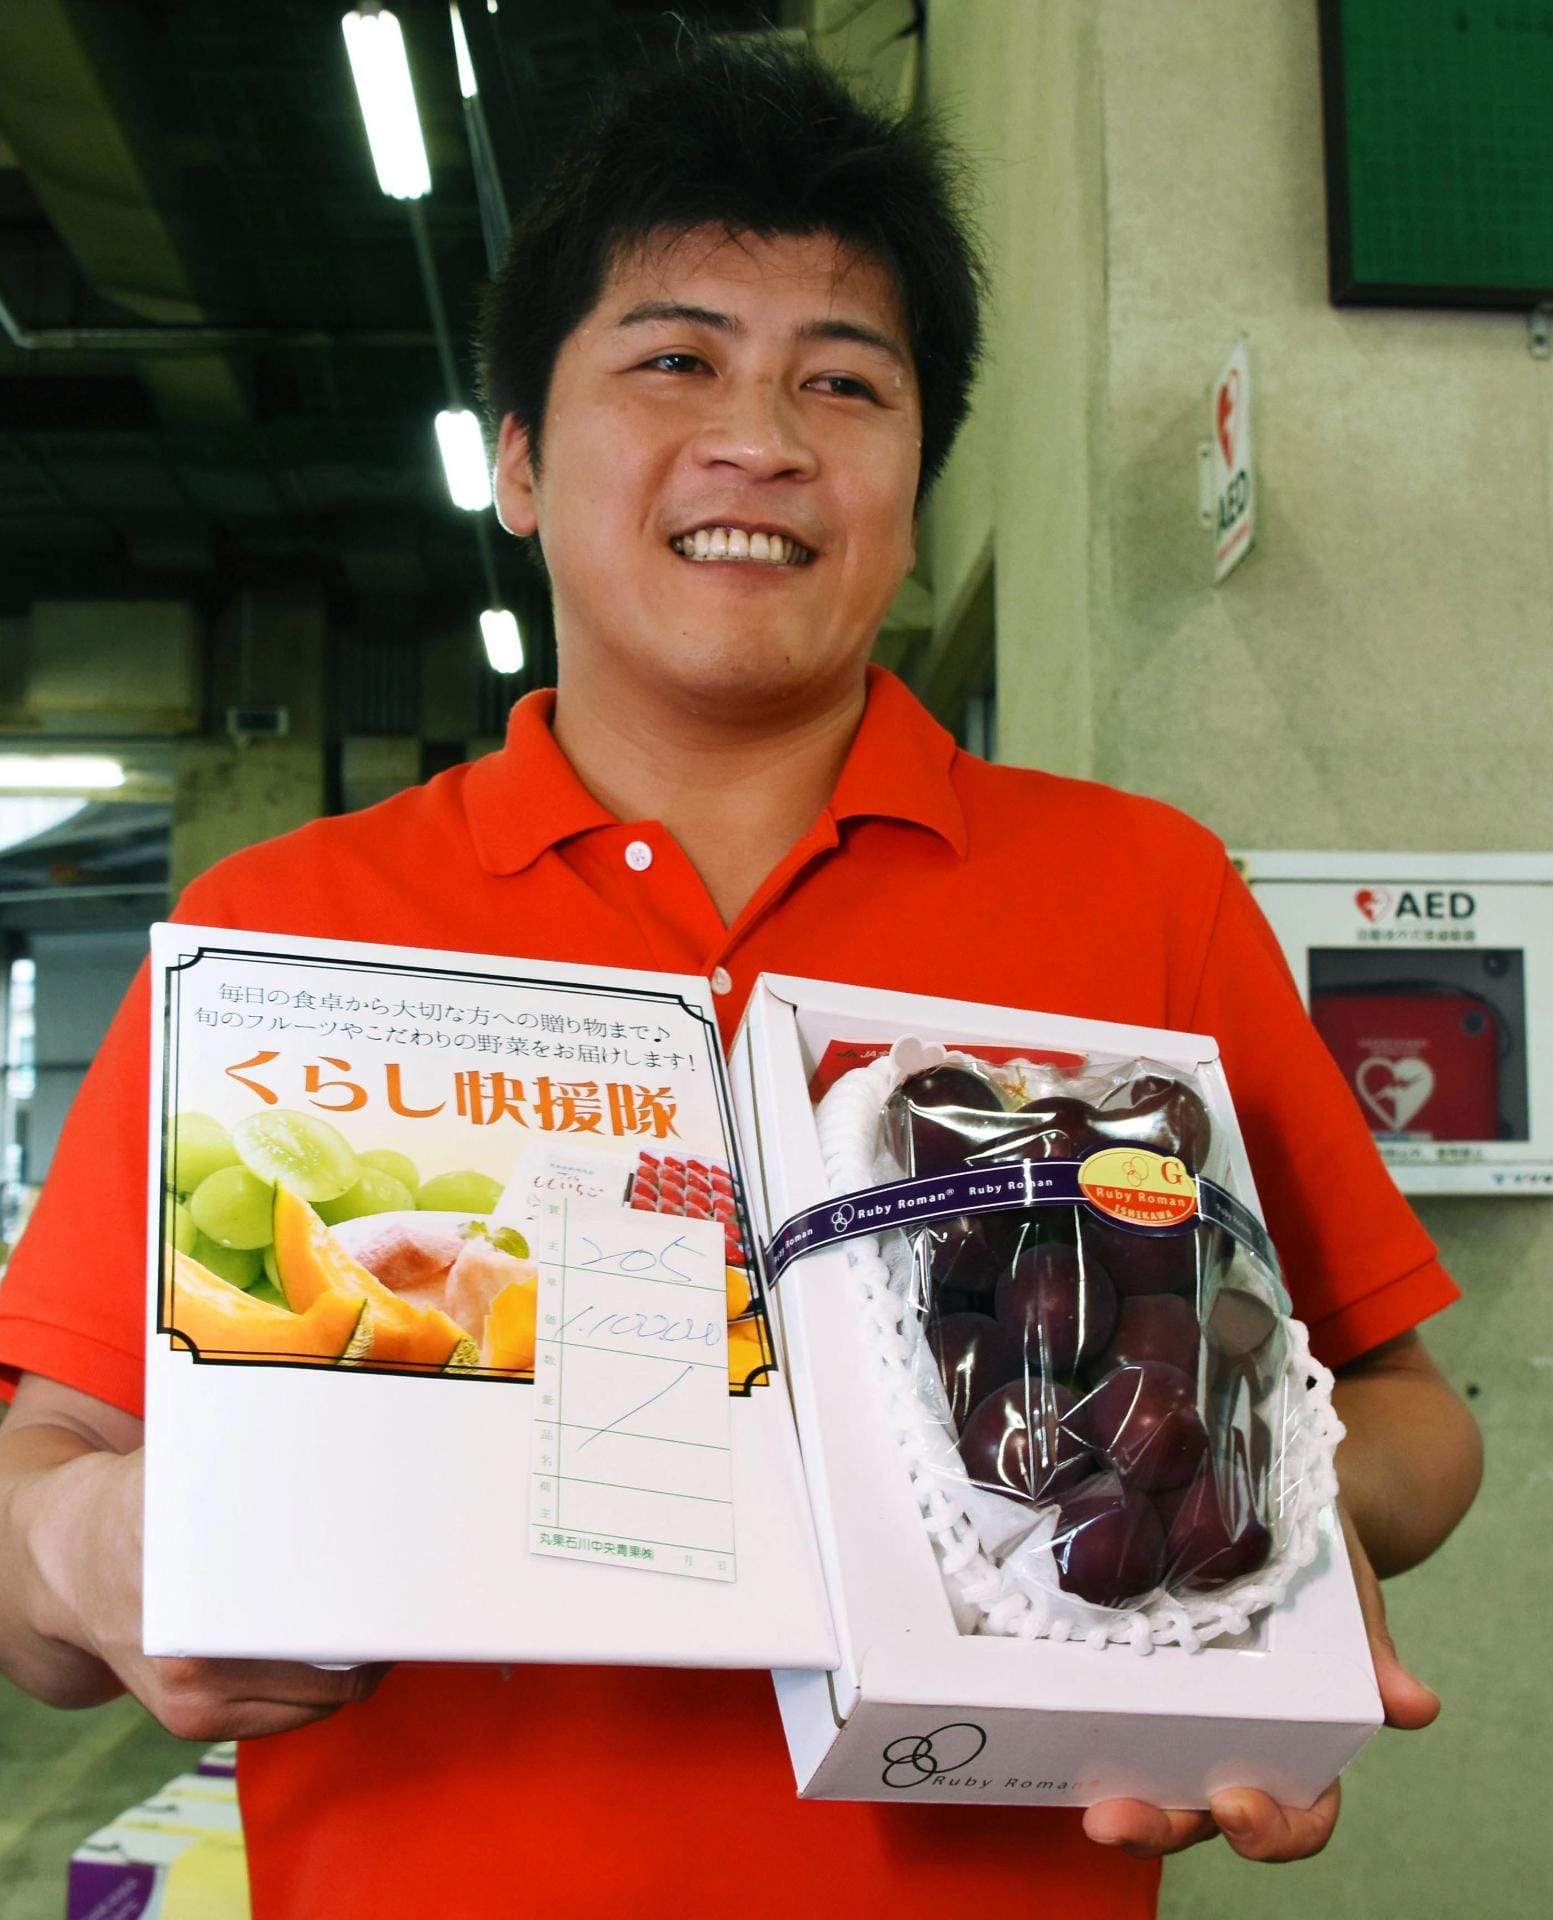 Stolzer Gewinner der Auktion im Juli 2016 war der Ladenbesitzer Takamaru Konishi. "Wir werden die Trauben in unserem Geschäft ausstellen - und sie dann unseren Kunden als Geschmacksprobe geben", sagte er japanischen Medien.